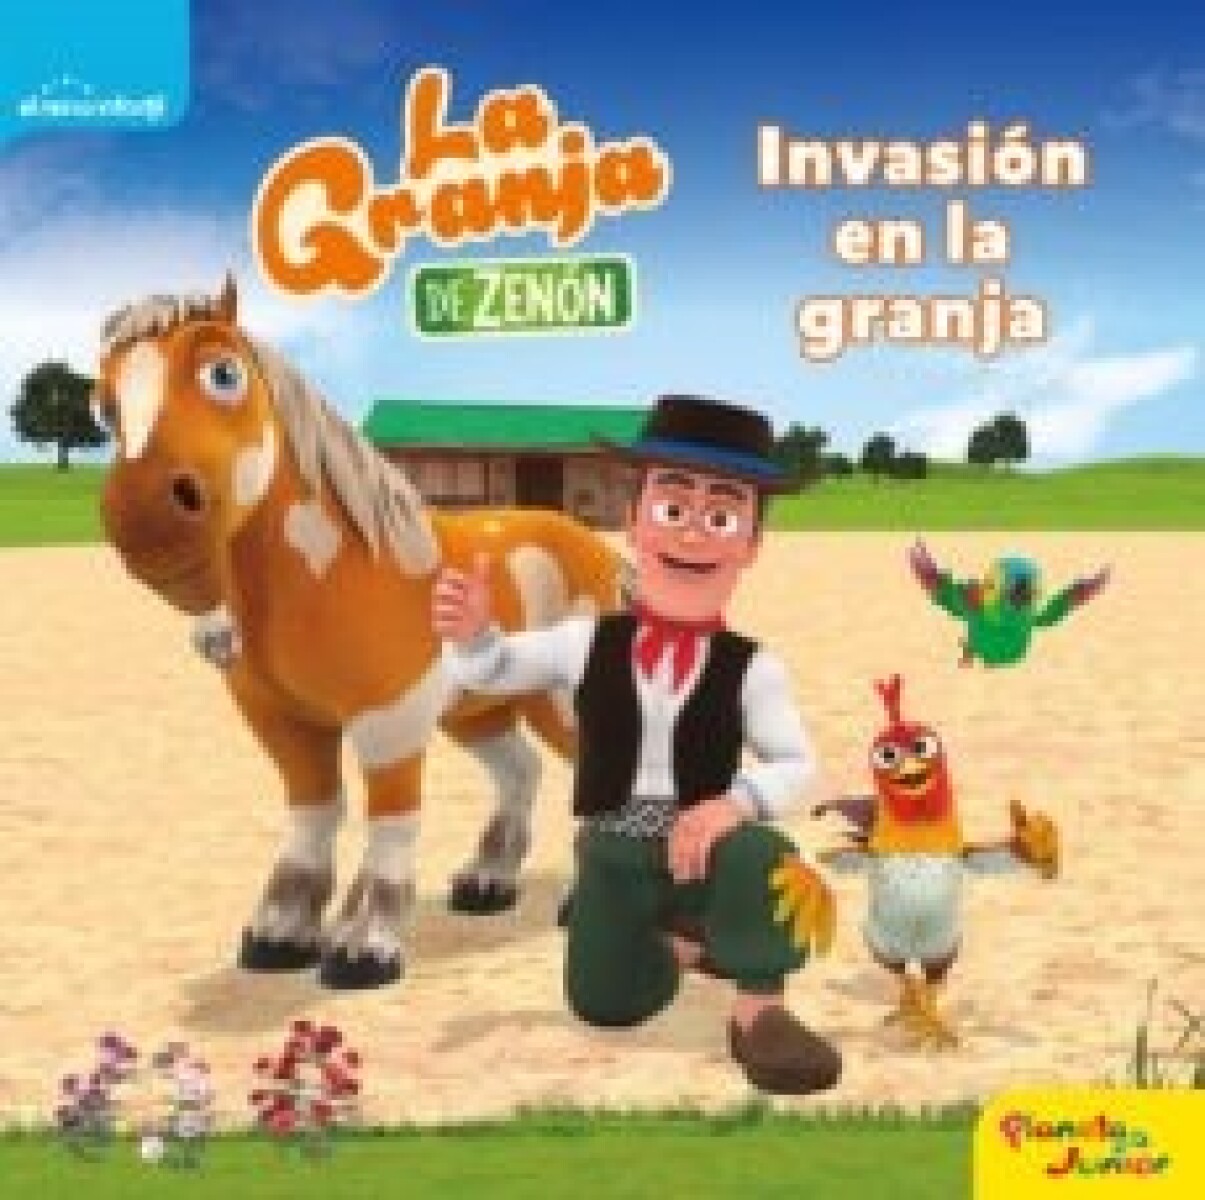 La Granja De Zenon- Invasion En La Granja 